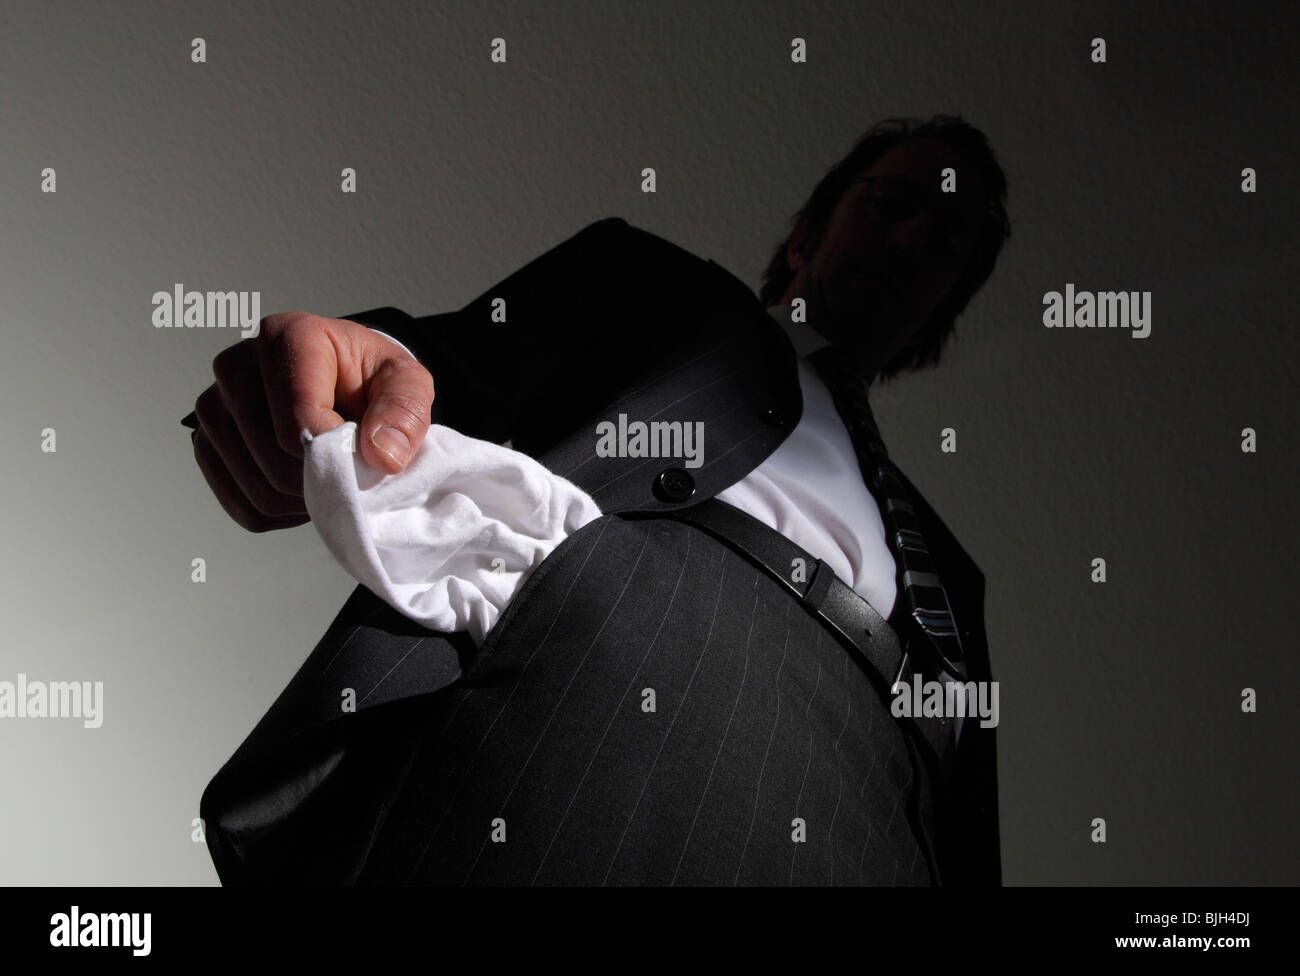 Hombre en un traje con los bolsillos vacíos. Símbolo: la insolvencia, la quiebra nacional, etc. Foto de stock